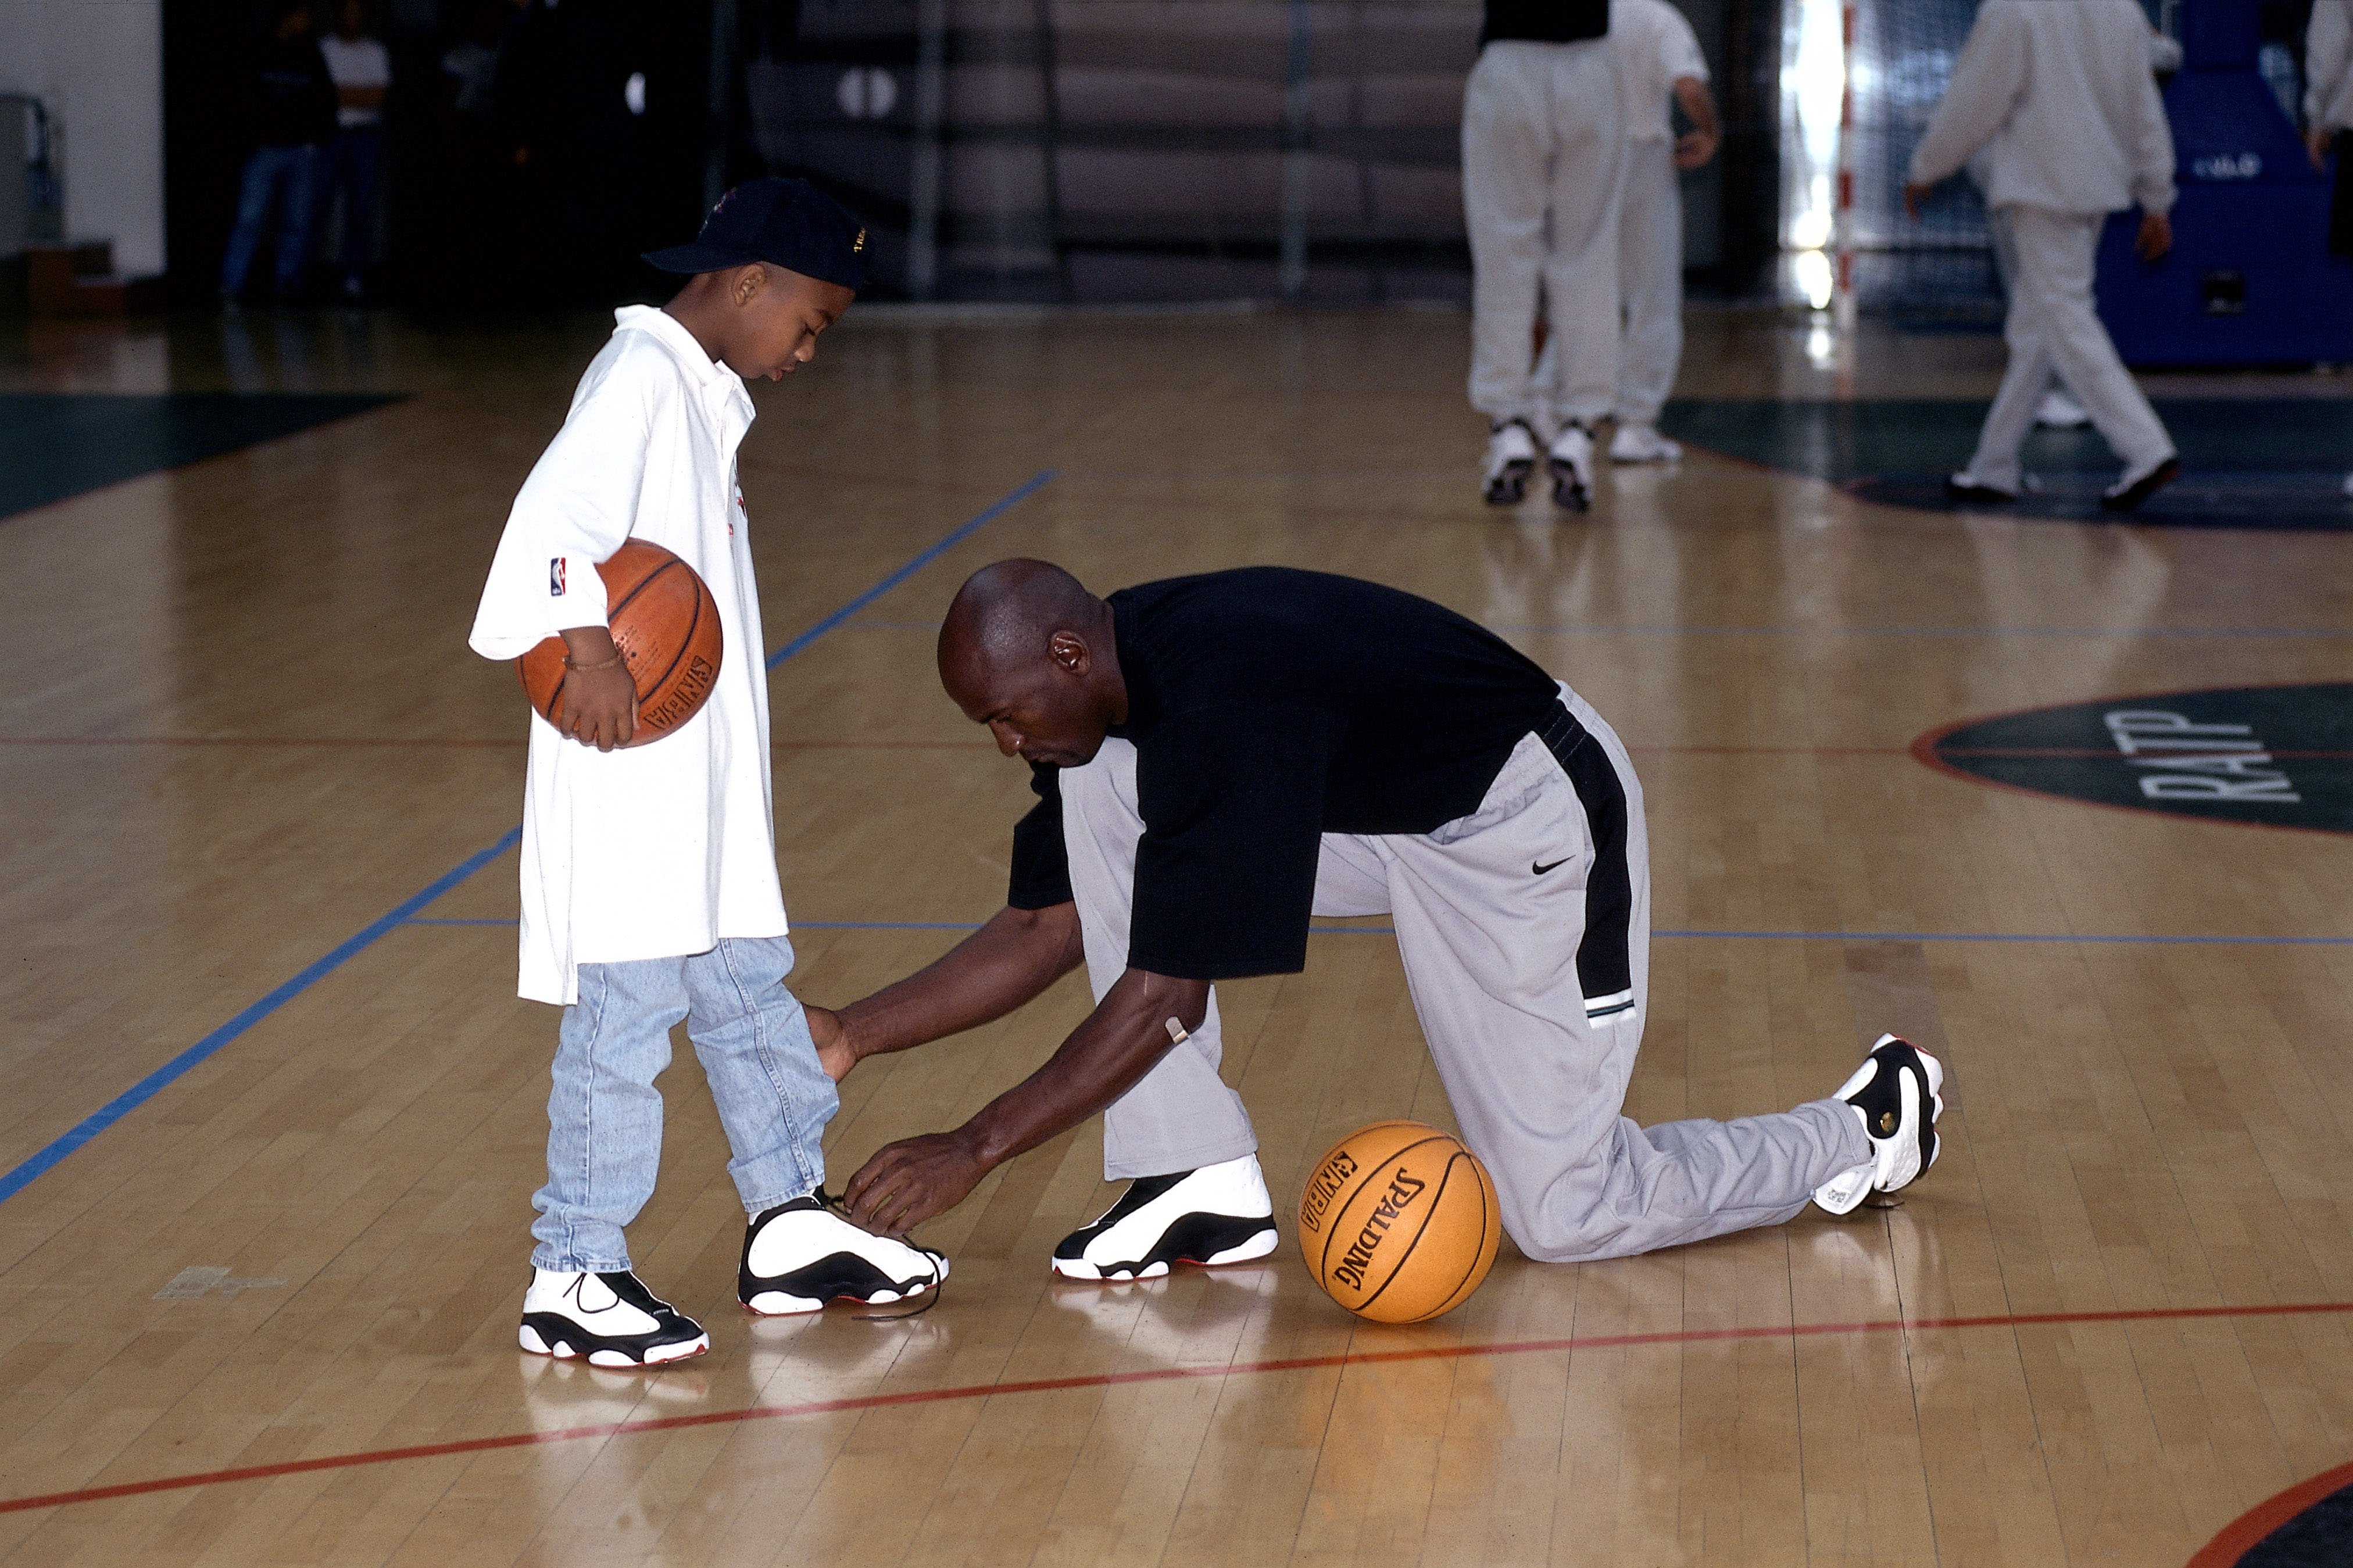 Michael Jordan atando los cordones de los zapatos de su hijo en una práctica de un torneo de baloncesto en París, Francia, en 1998. | Foto: Getty Images